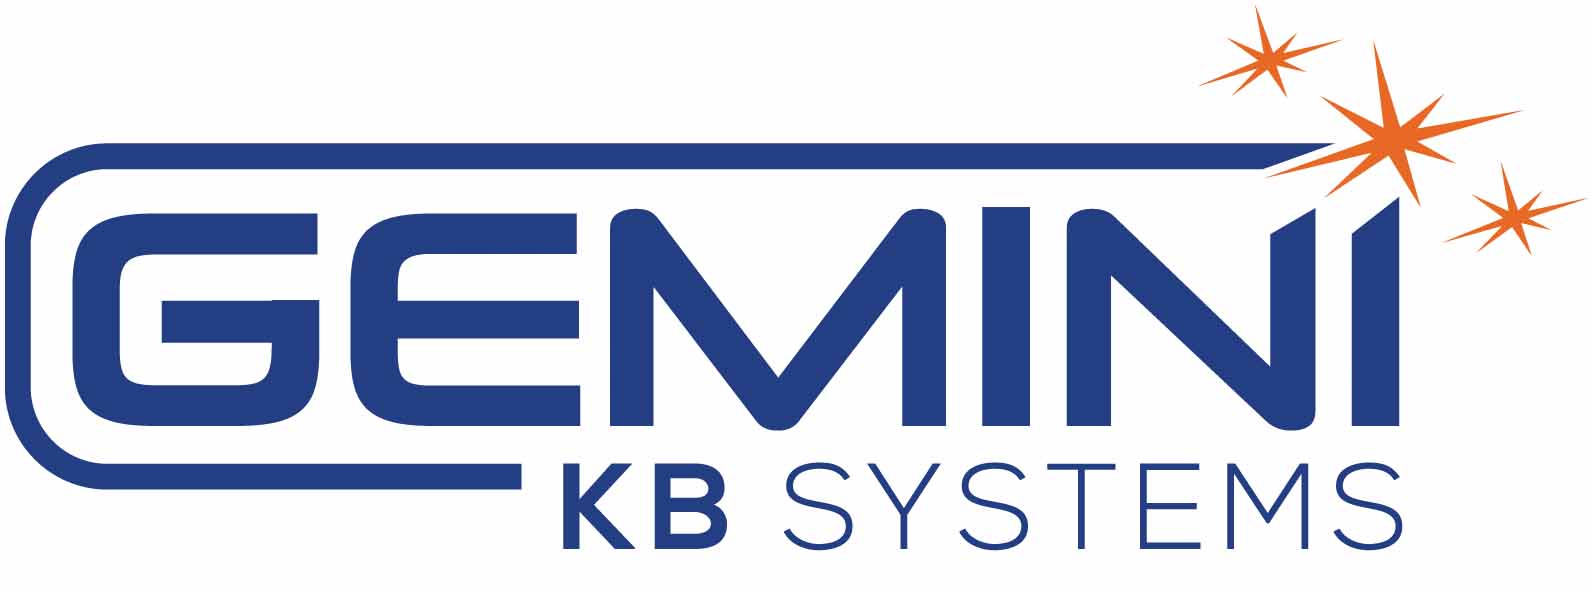 gemini_kb_systems_logo_2021